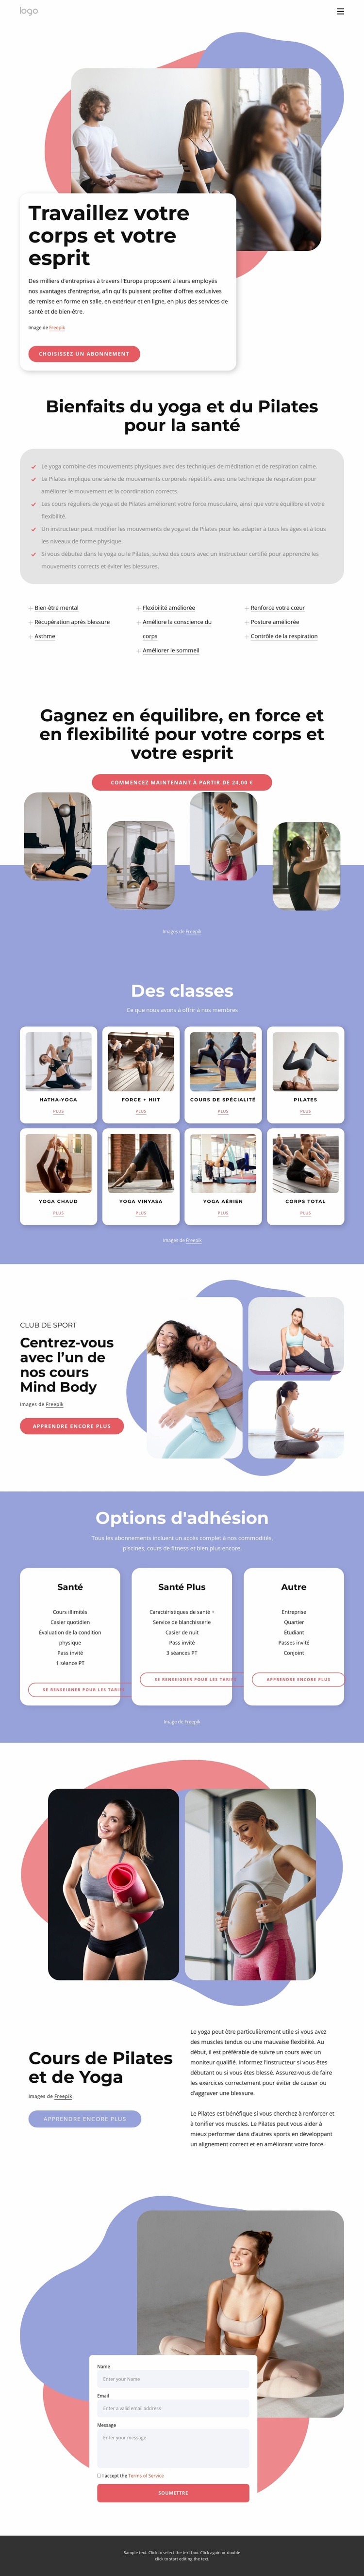 Cours de Pilates et de yoga Modèle HTML5